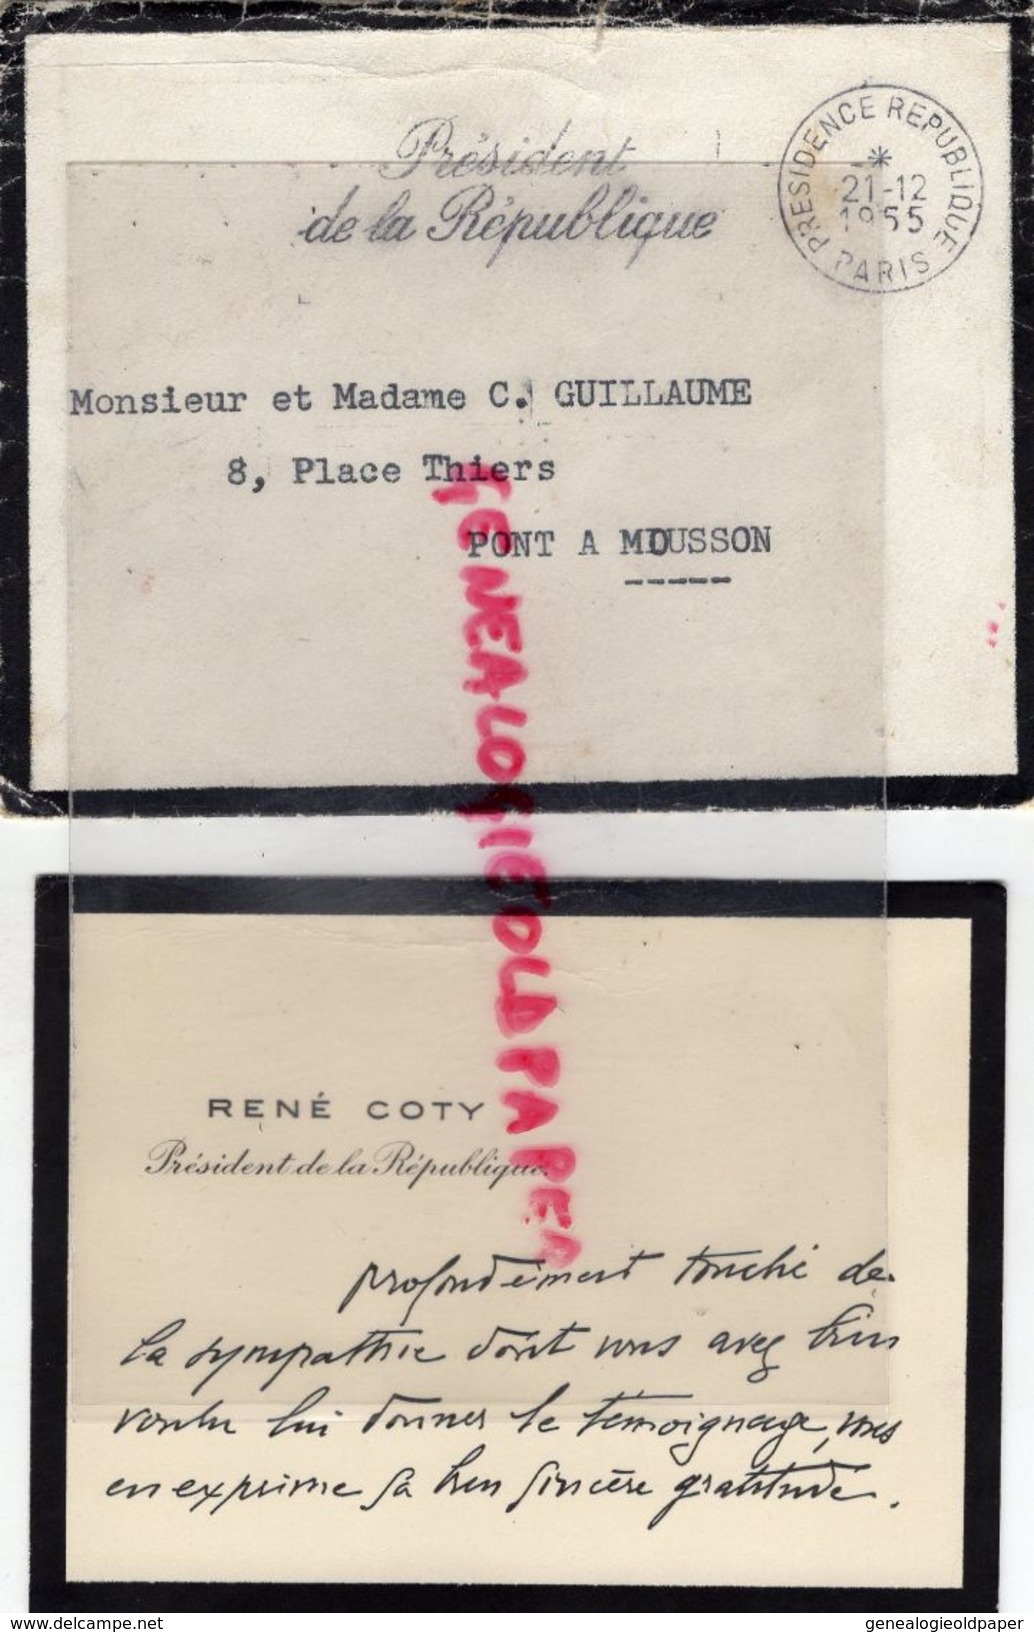 54- PONT A MOUSSON - RARE ENVELOPPE + CARTE MANUSCRITE PRESIDENT REPUBLIQUE RENE COTY A GUILLAUME 8 PLACE THIERS-1955 - Documents Historiques